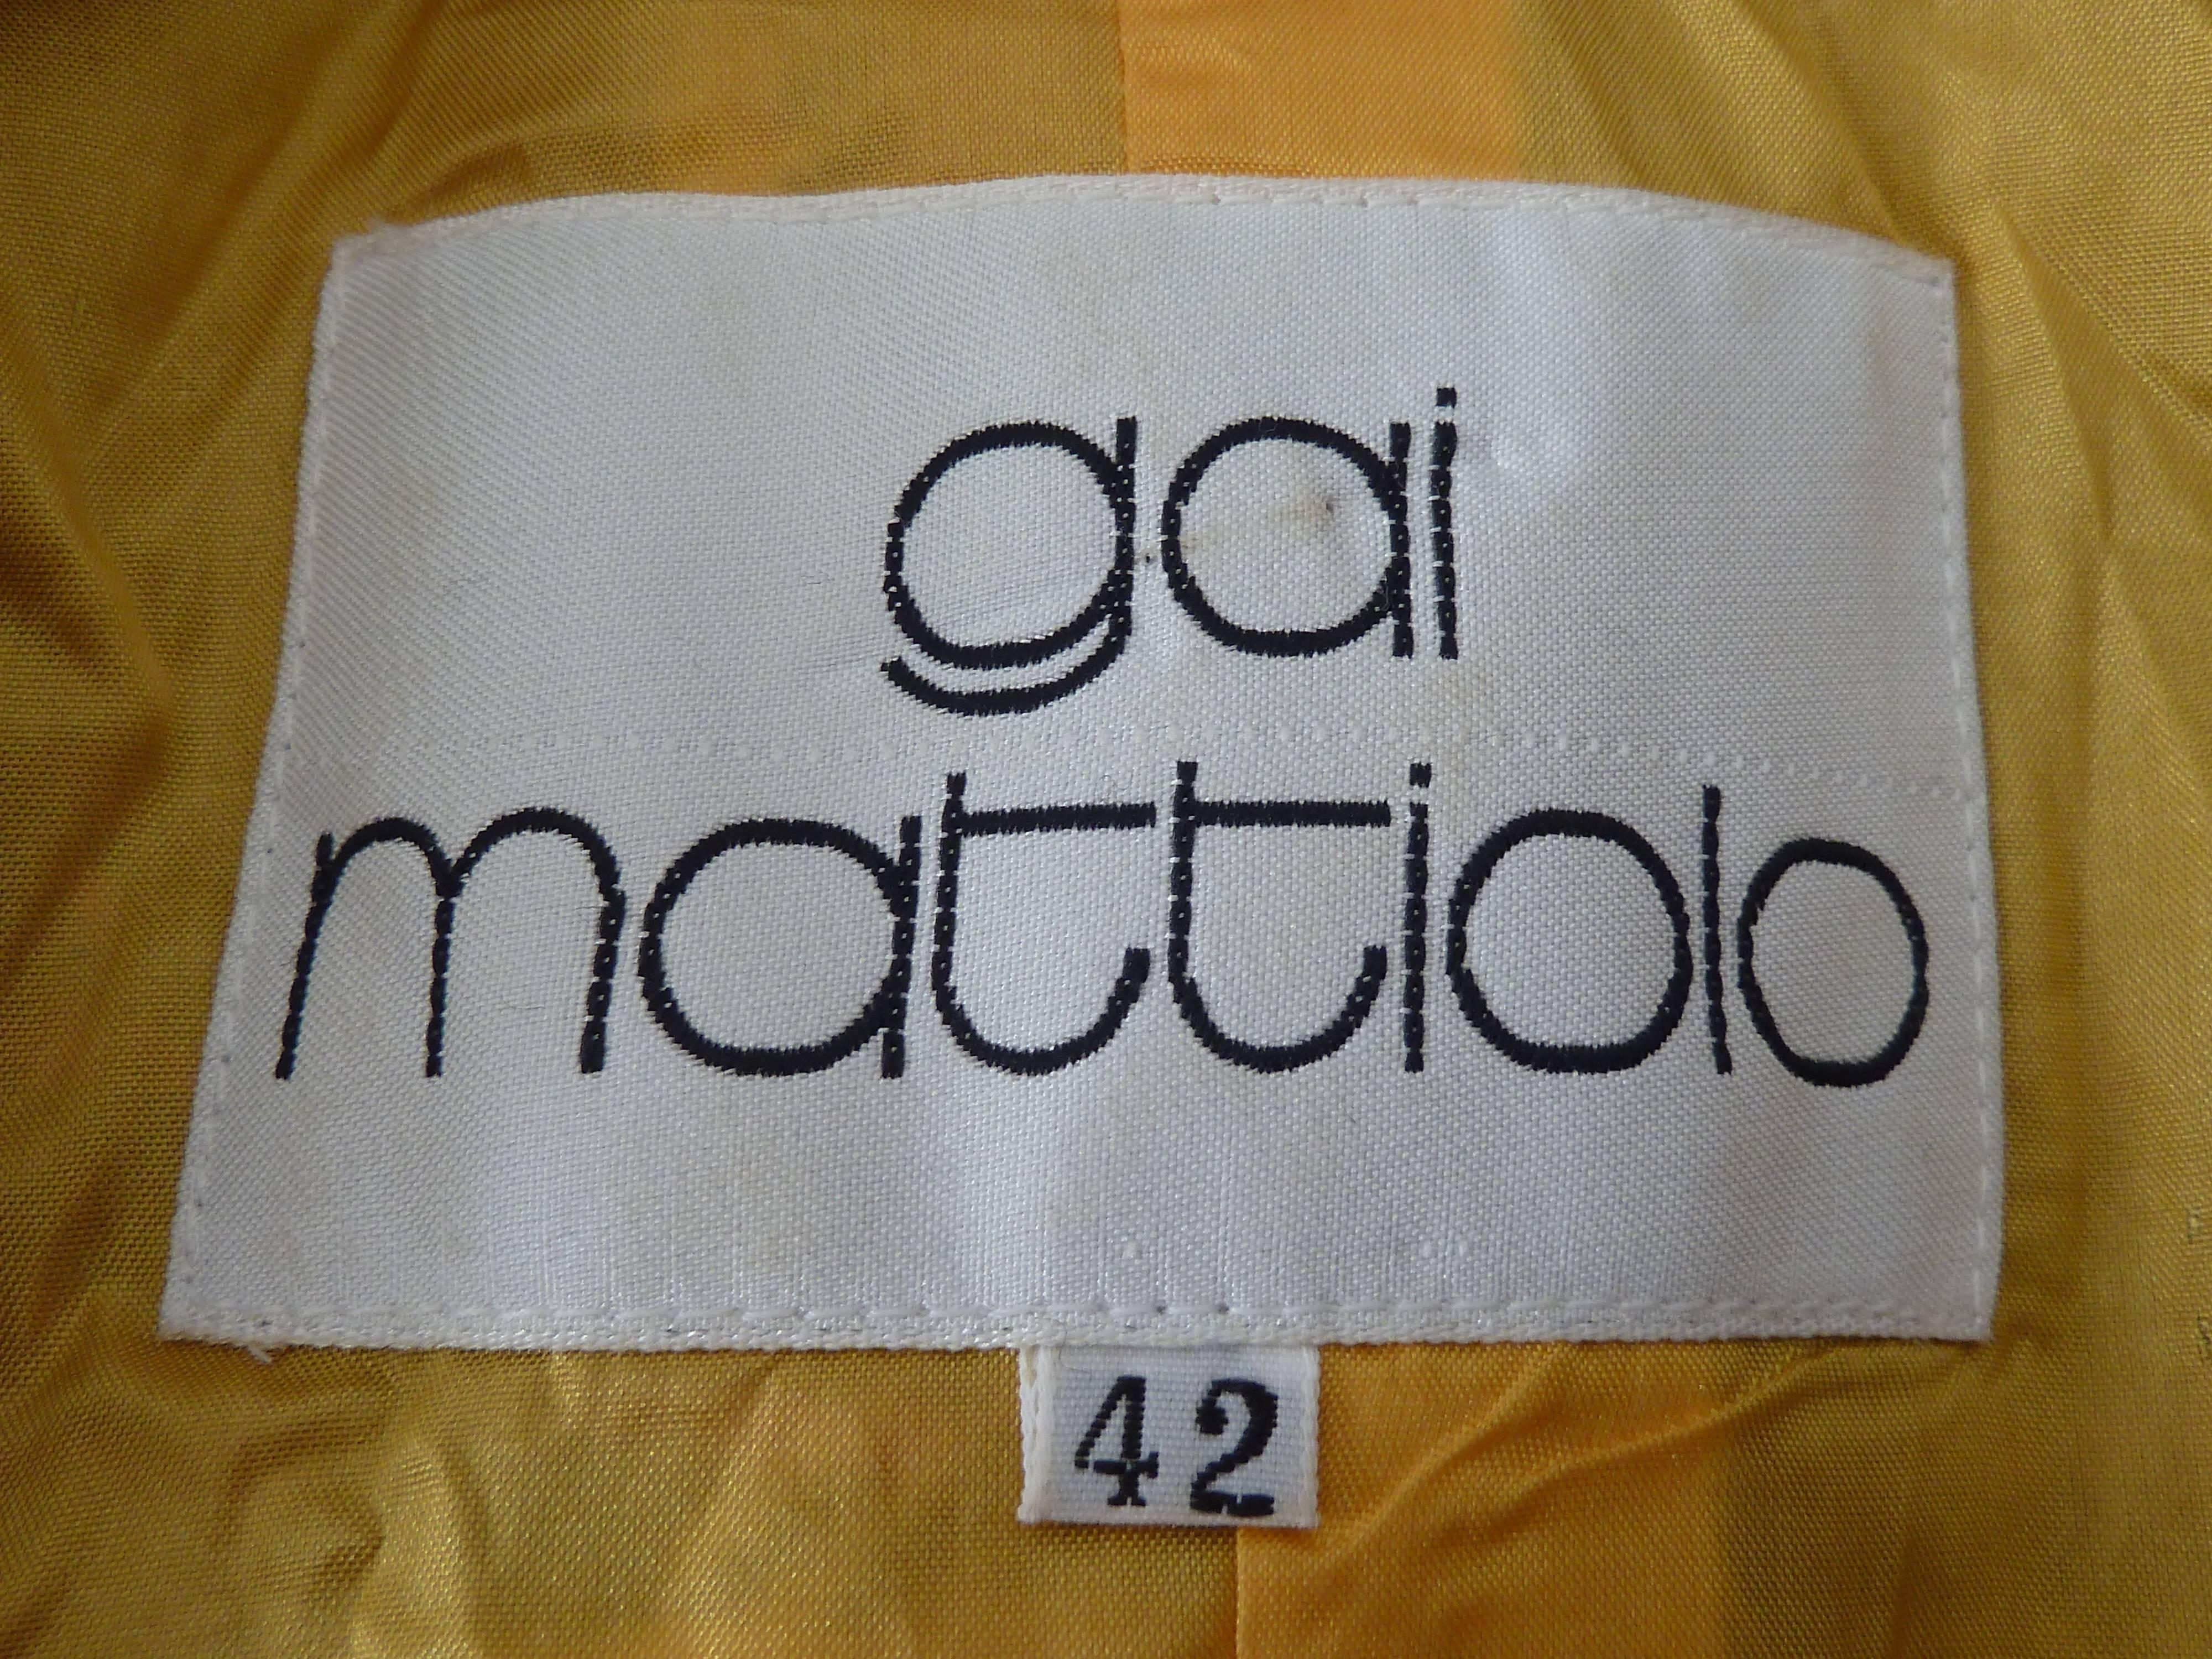 Gai Mattiolo 1980s set dress jacket skirt wool boucle check yellow blue size 42 4